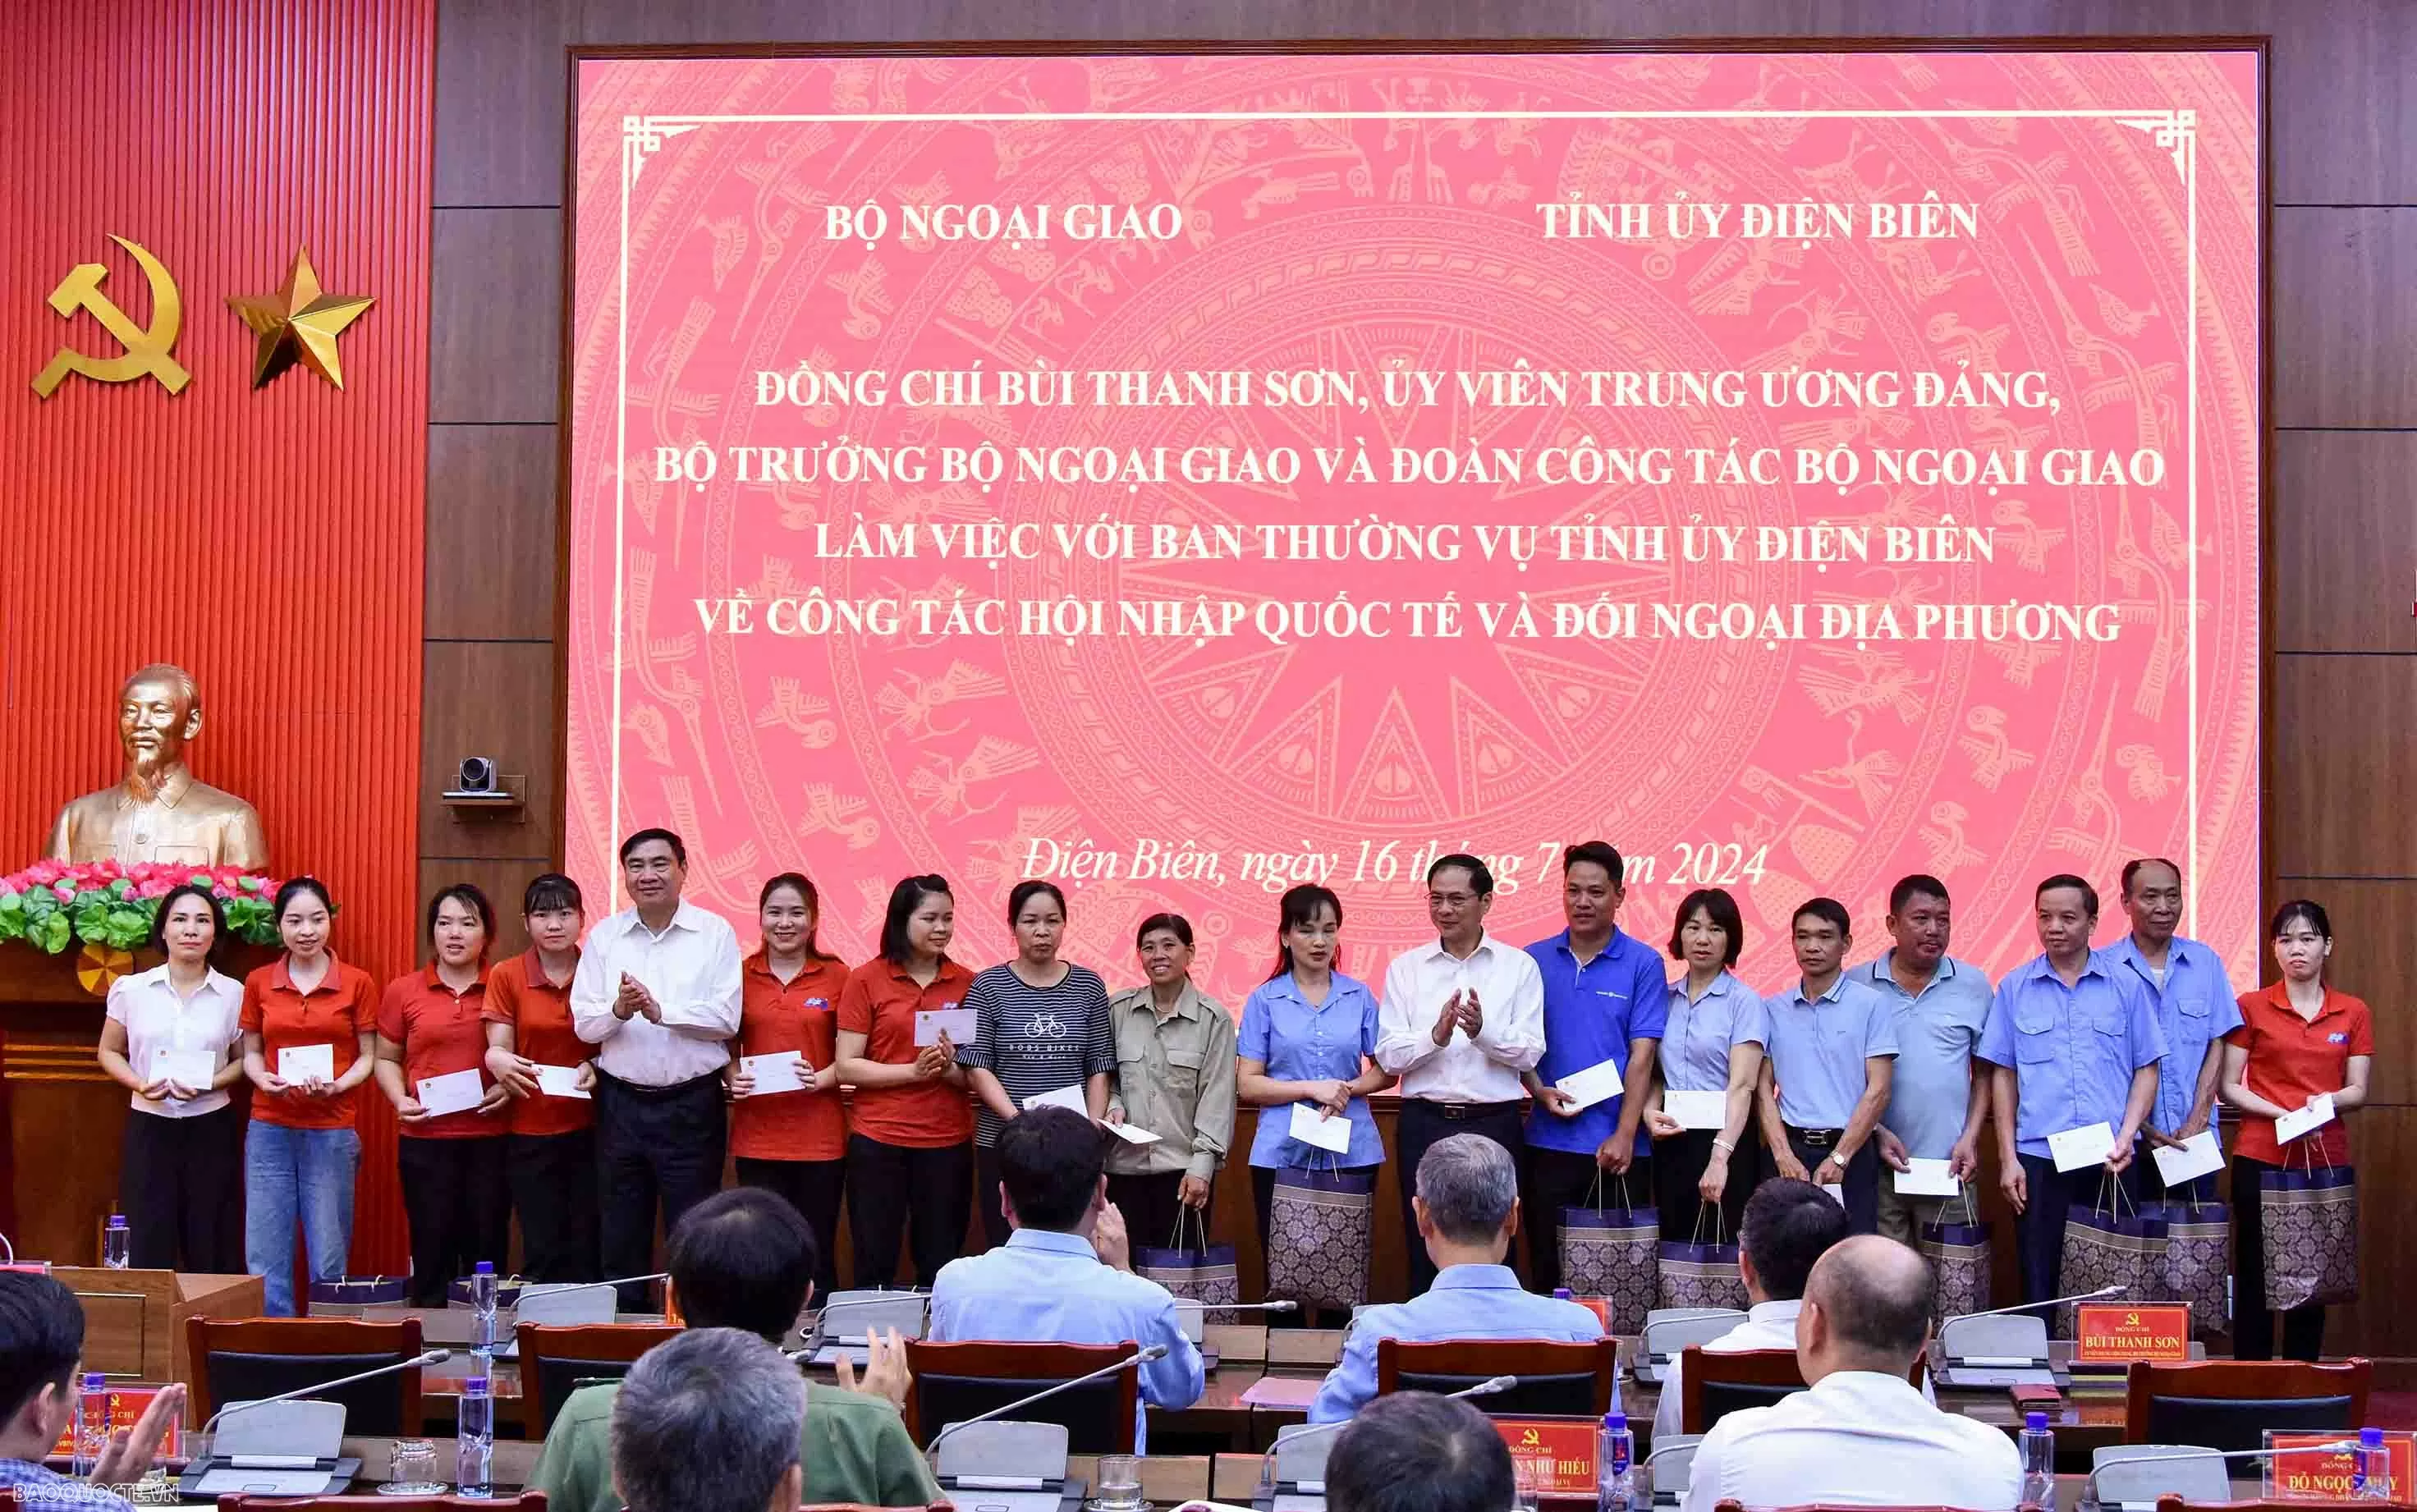 Bộ trưởng Ngoại giao Bùi Thanh Sơn thăm và làm việc tại tỉnh Điện Biên